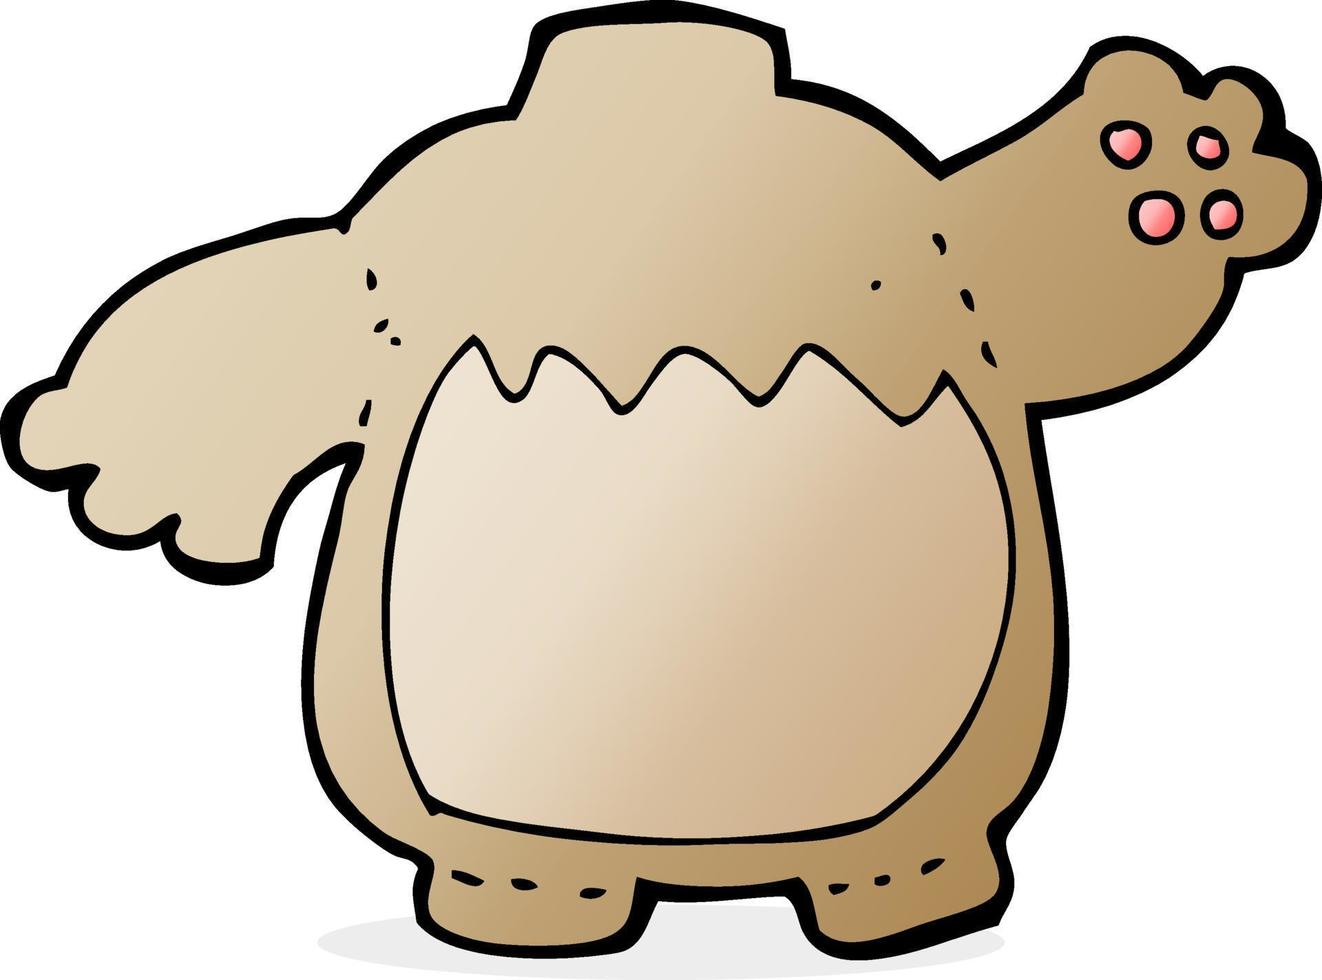 doodle character cartoon teddy bear body vector